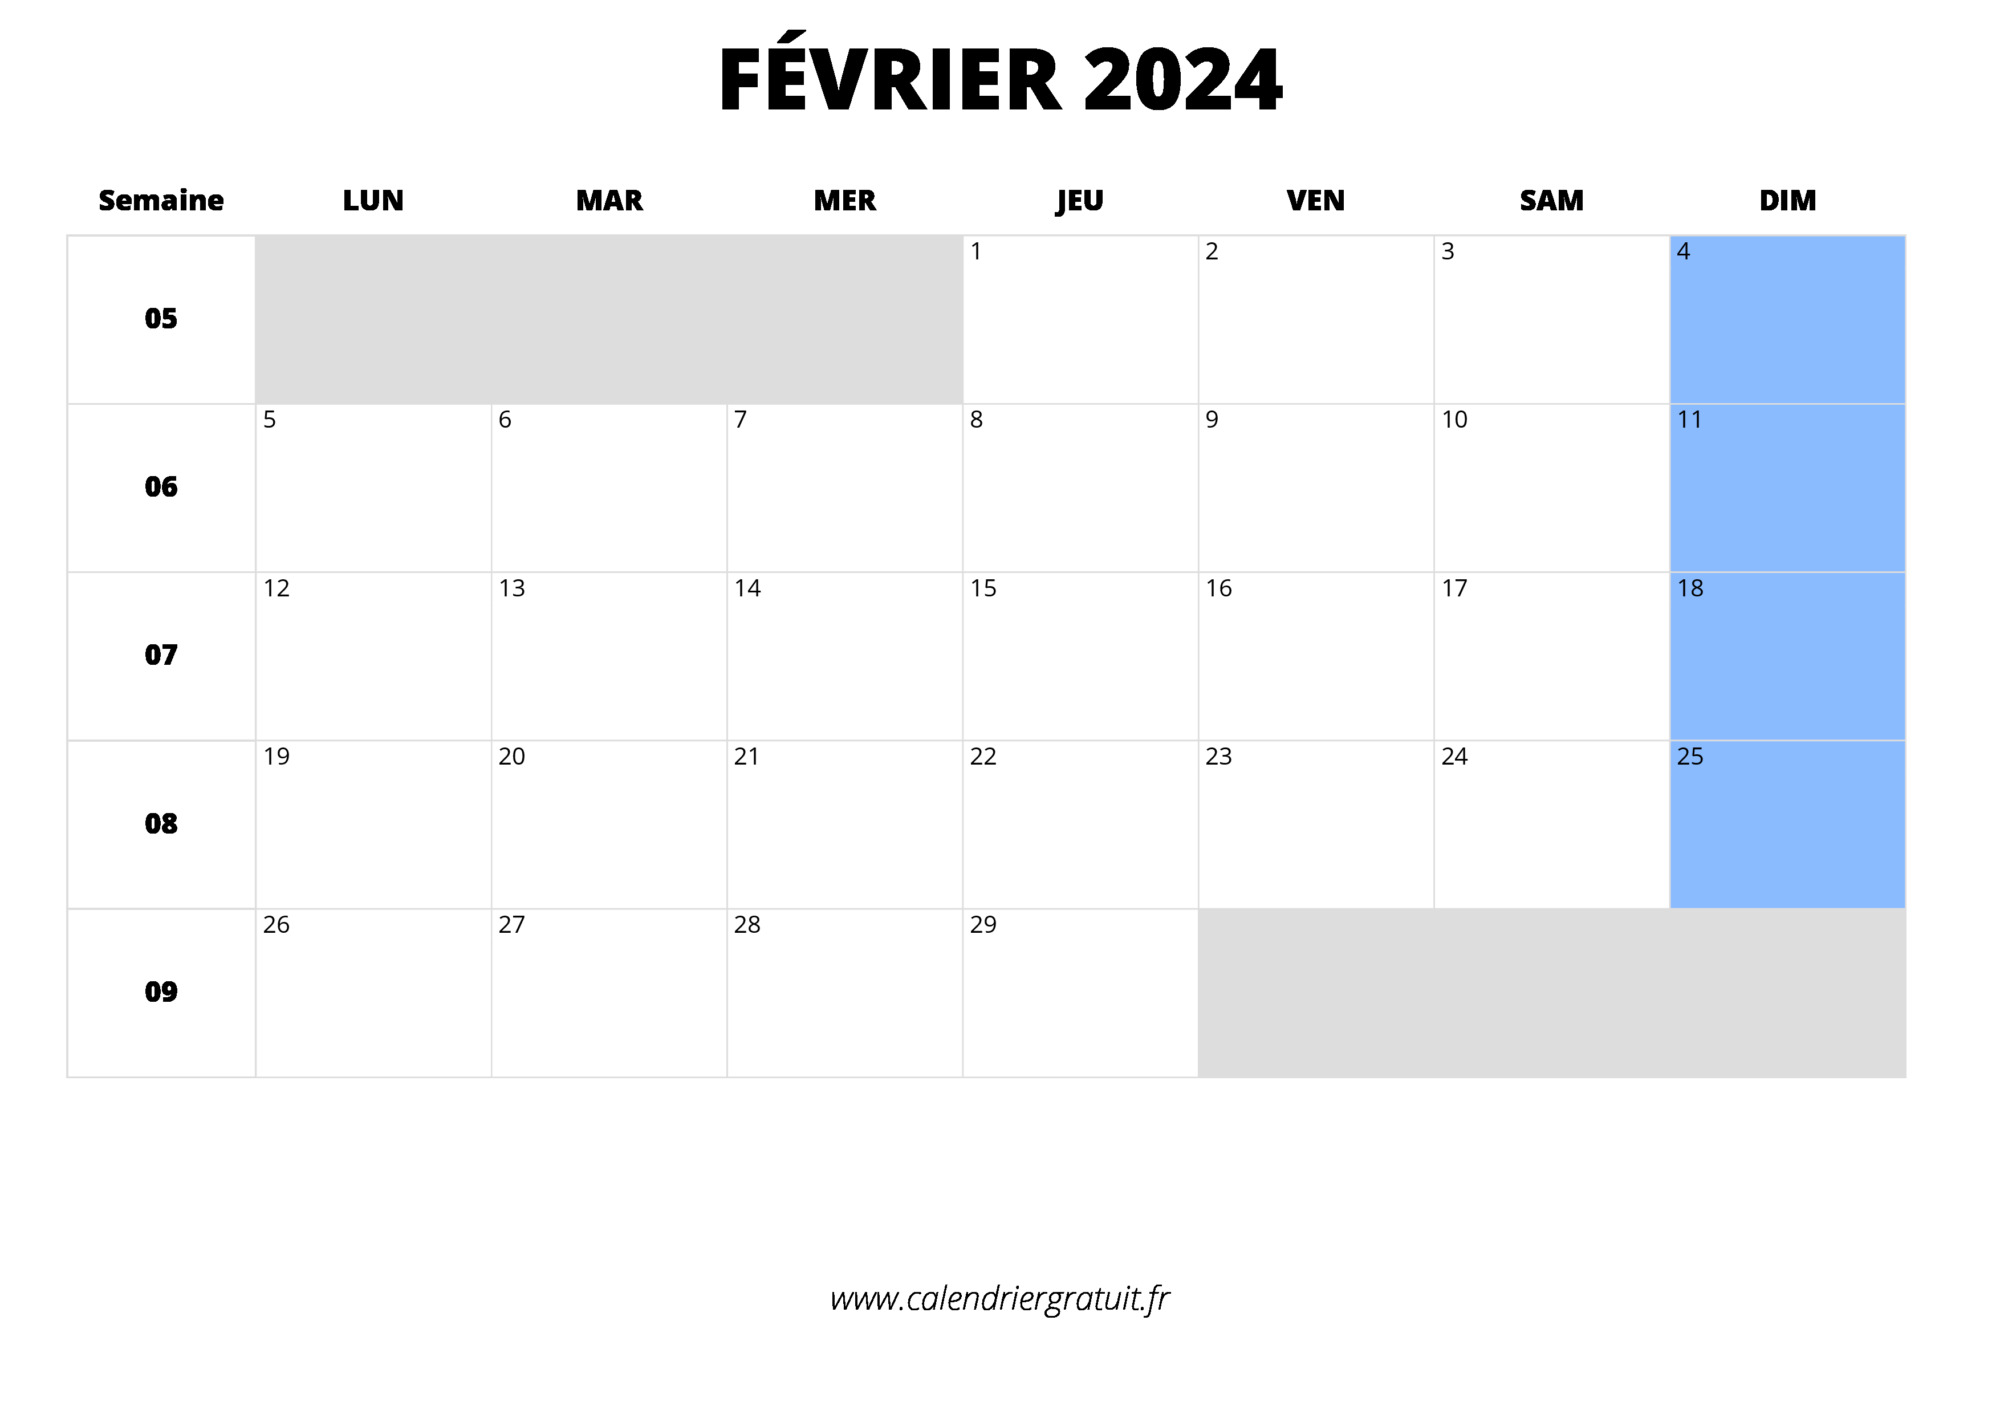 Calendrier 2024 avec jours fériés et dates utiles à imprimer